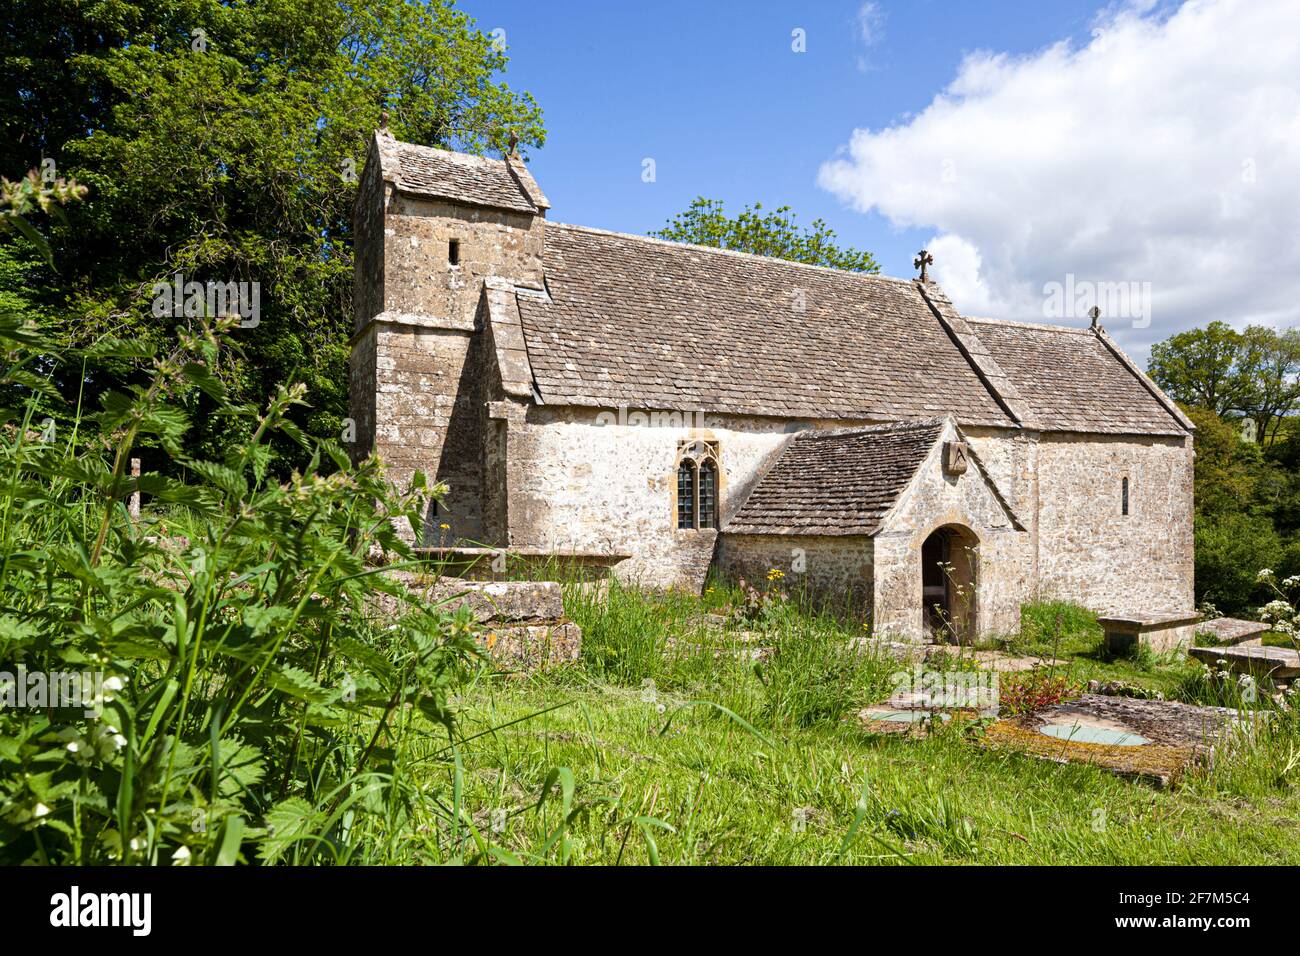 St Michaels Kirche (welche stammt aus dem sächsischen Zeiten) in die Cotswold Dorf Duntisbourne Rouse, Gloucestershire UK Stockfoto